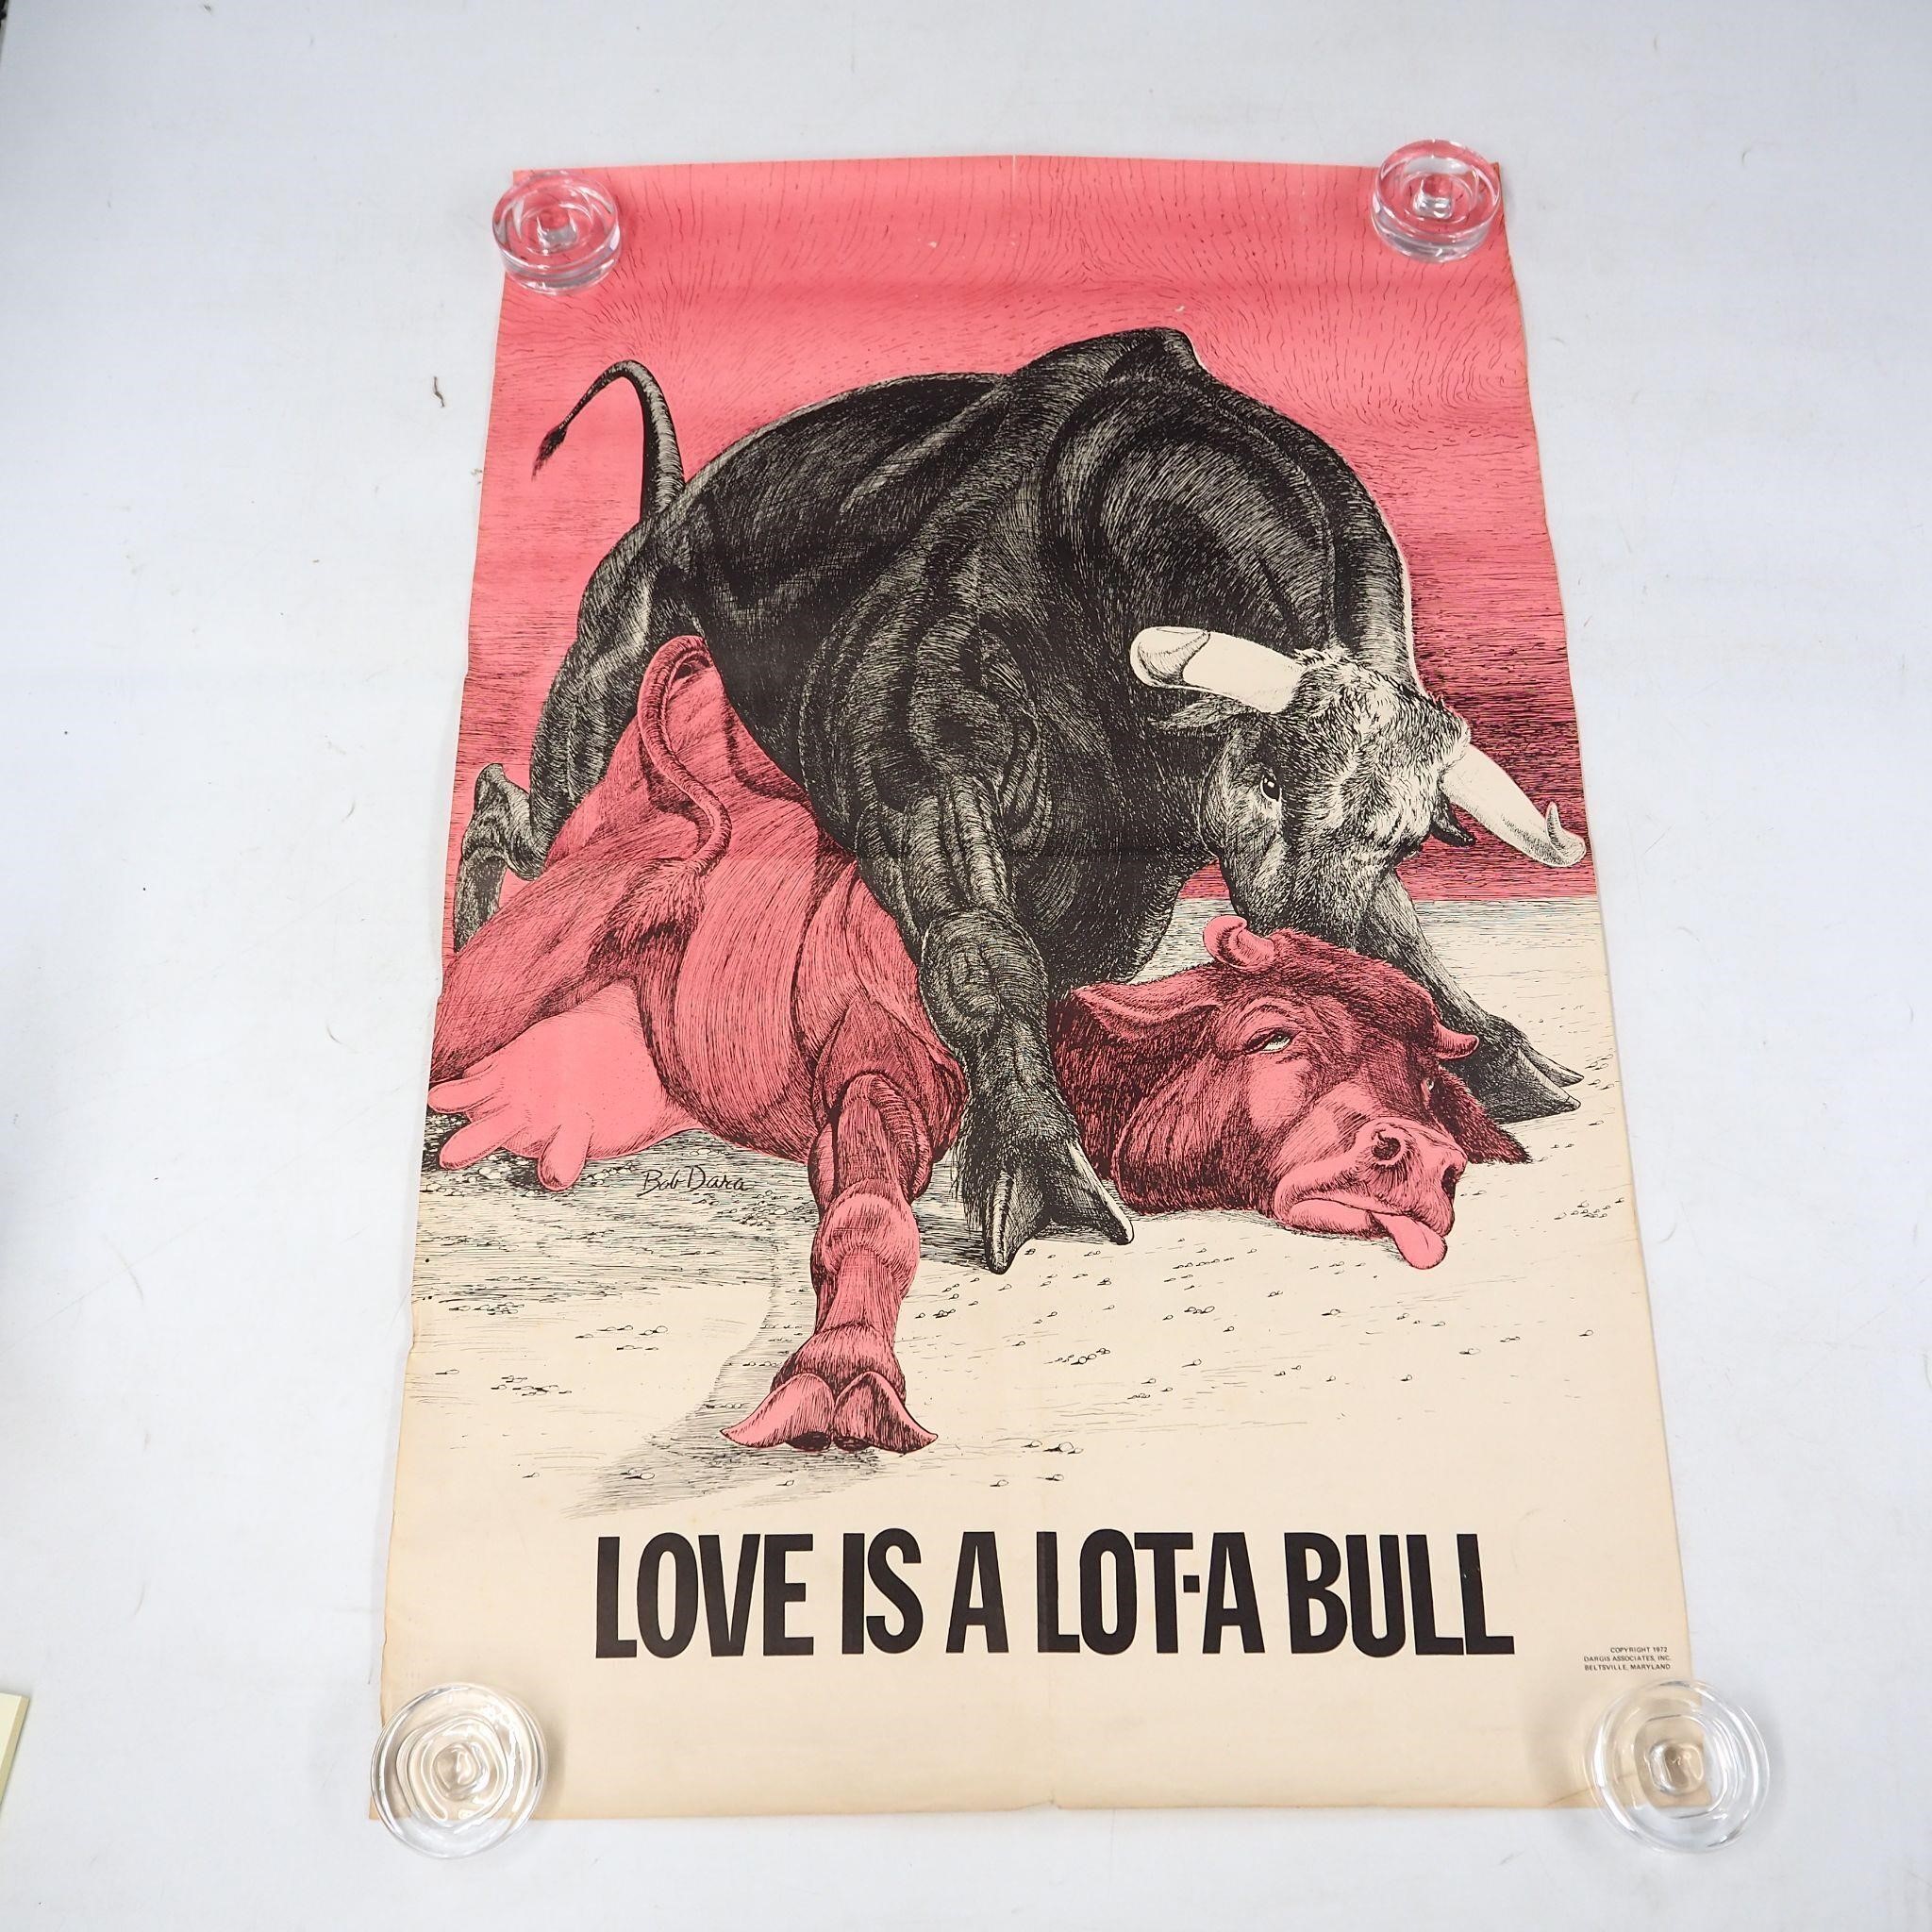 Humorous 1972 Bob Dara Poster "Love is Bull"